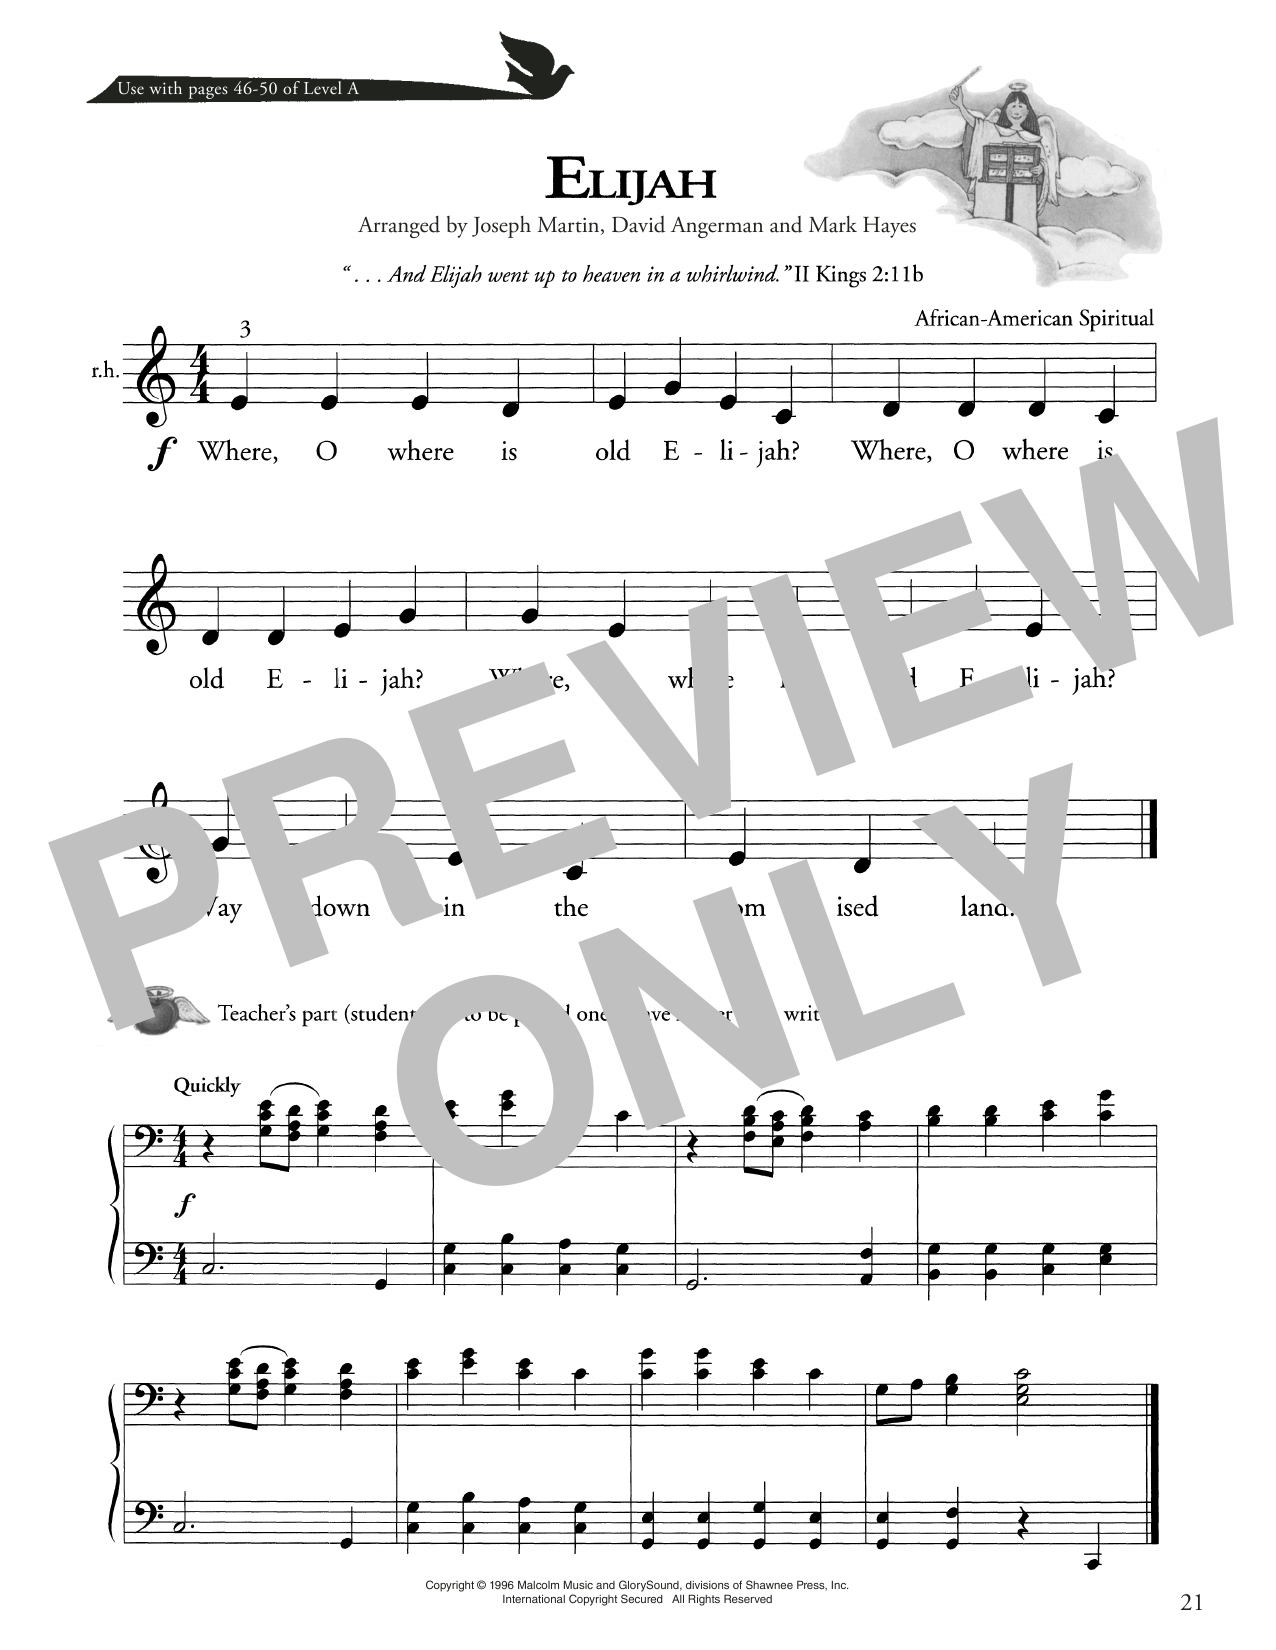 African American Spiritual Elijah Sheet Music Notes & Chords for Piano Method - Download or Print PDF